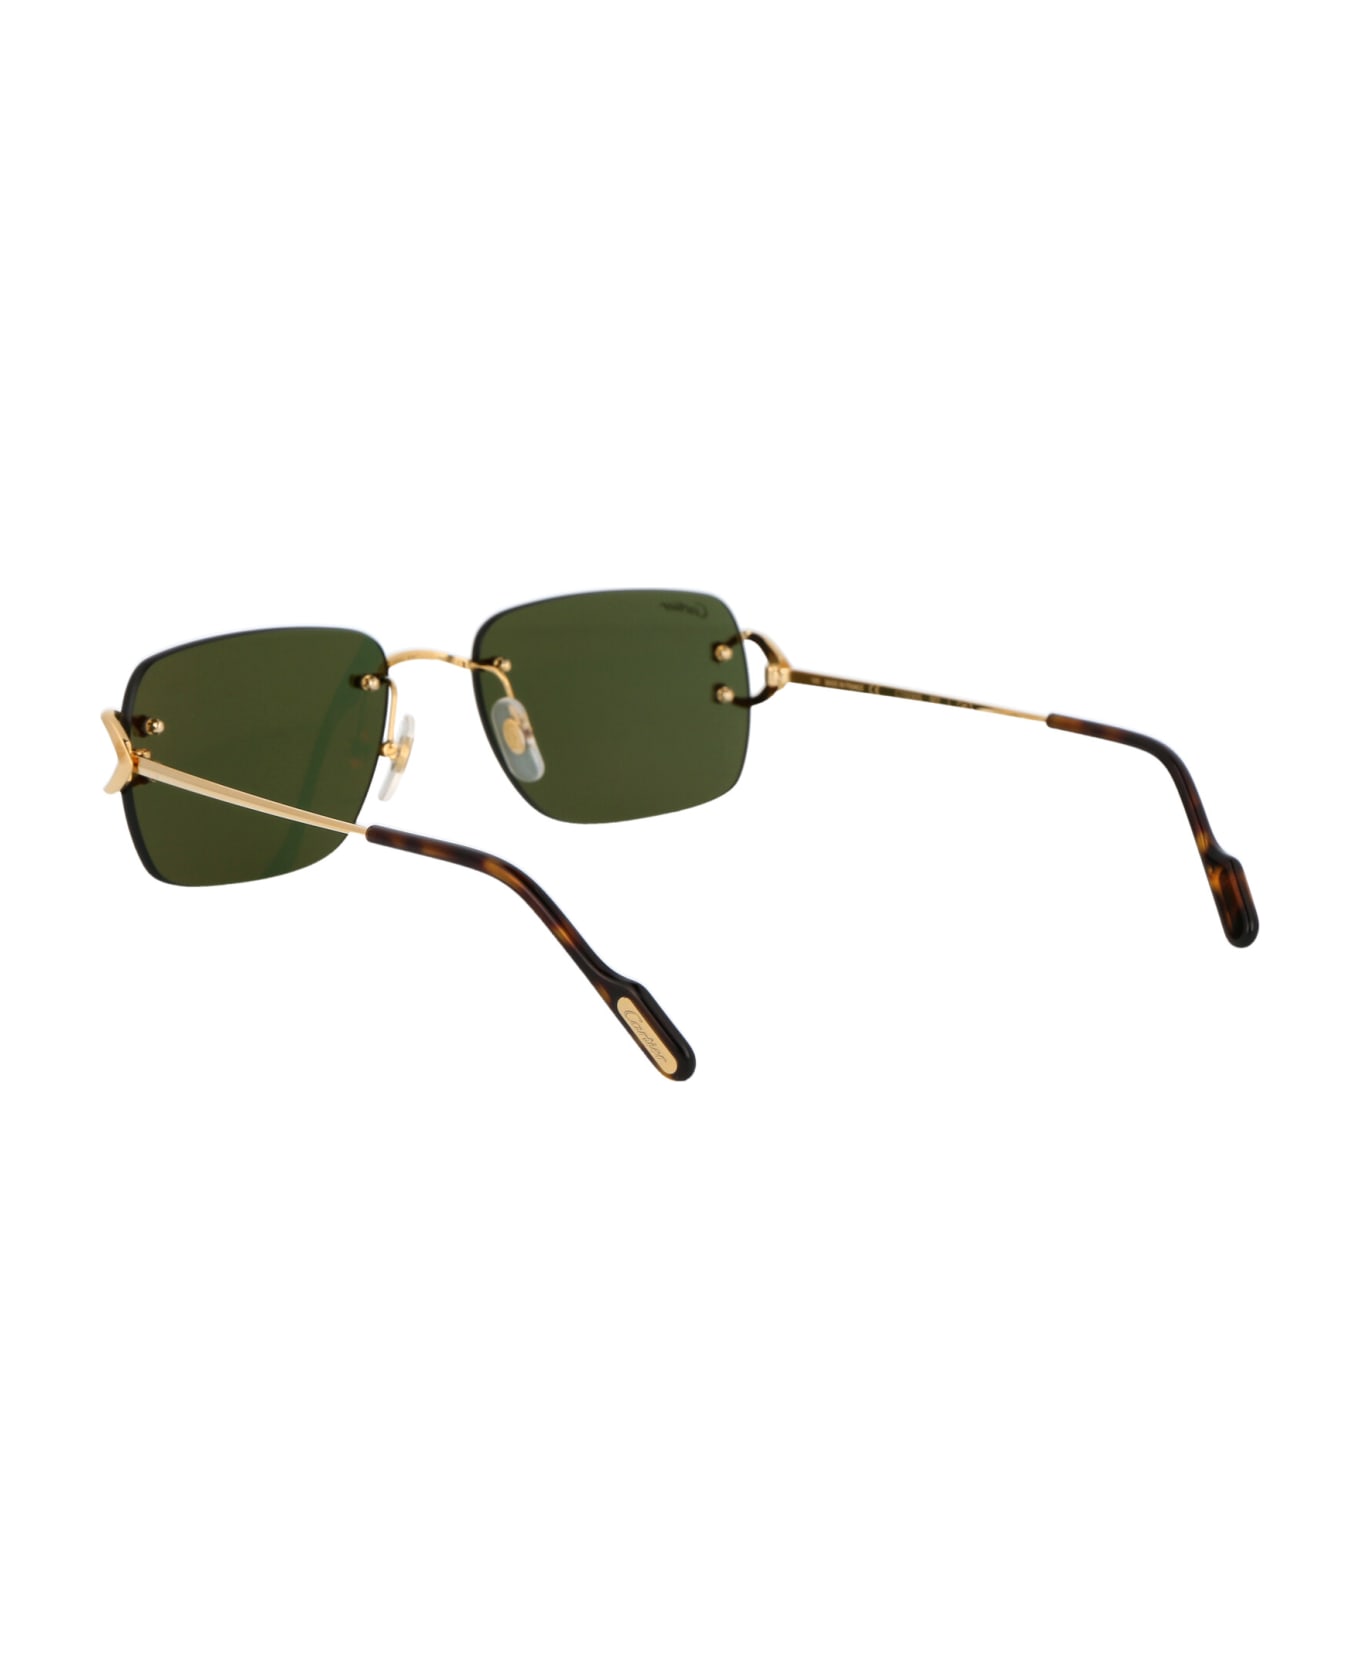 Cartier Eyewear Ct0330s Sunglasses - 002 GOLD GOLD GREEN